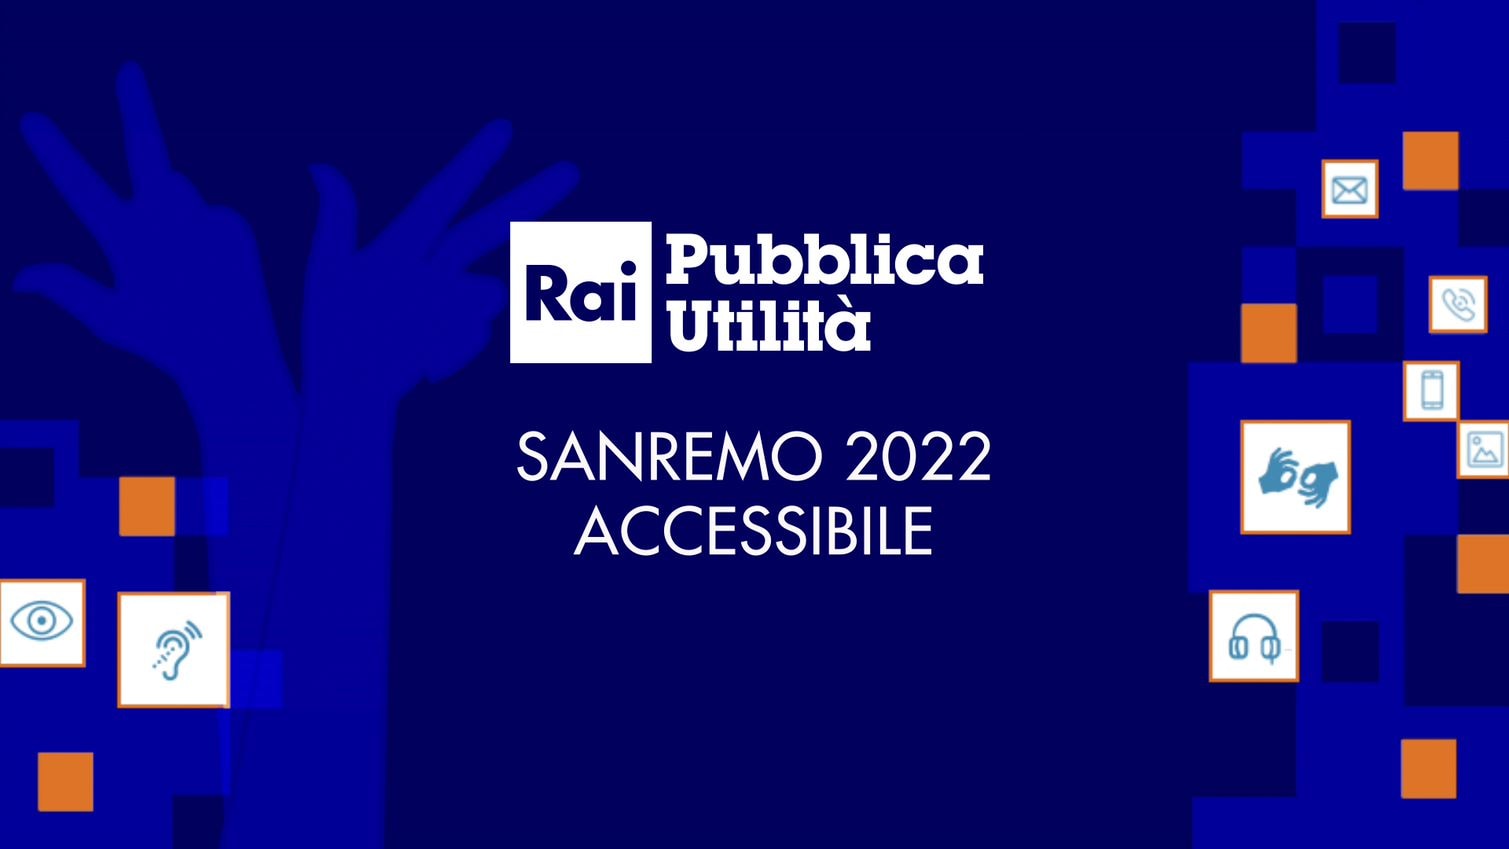 Rai Pubblica Utilità
Sanremo 2022 Accessibile